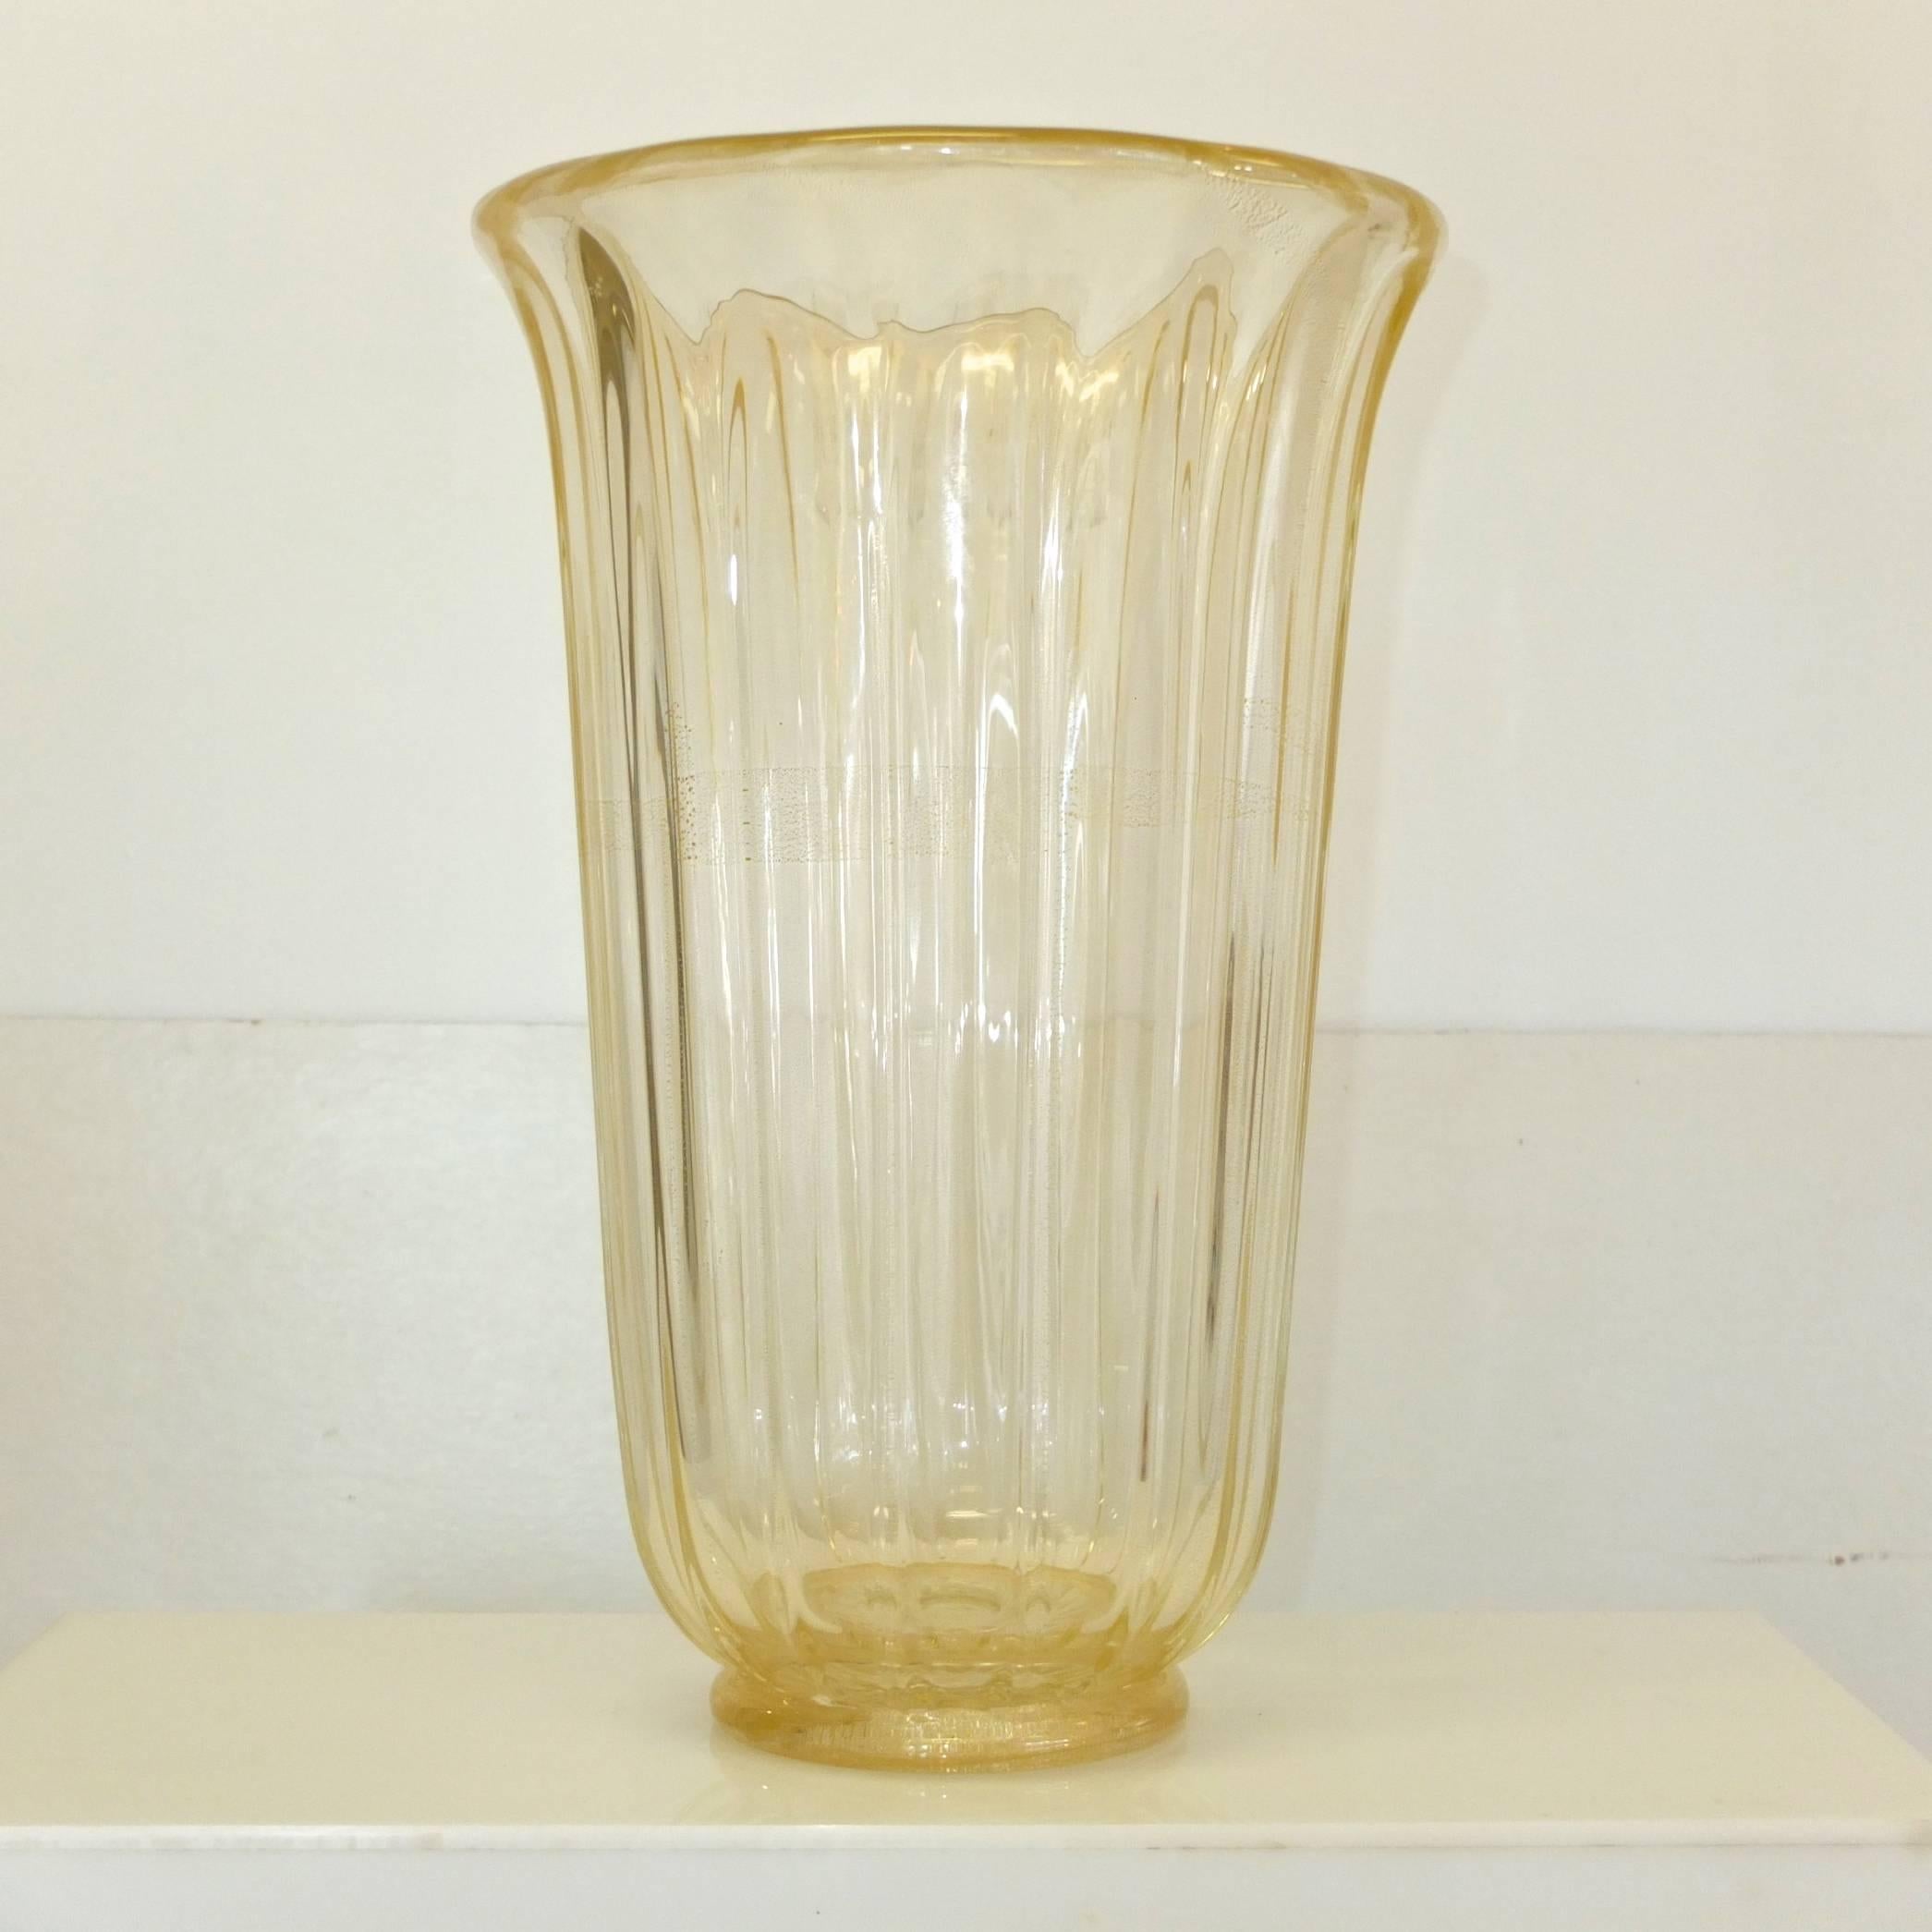 Grand vase à fleurs en verre de Murano incrusté de mouchetures d'or pur et de bulles contrôlées. Signé Seguso V. D'Arte. Forme de cloche cannelée. 18 pouces de hauteur, 12 pouces de diamètre. Excellent état.